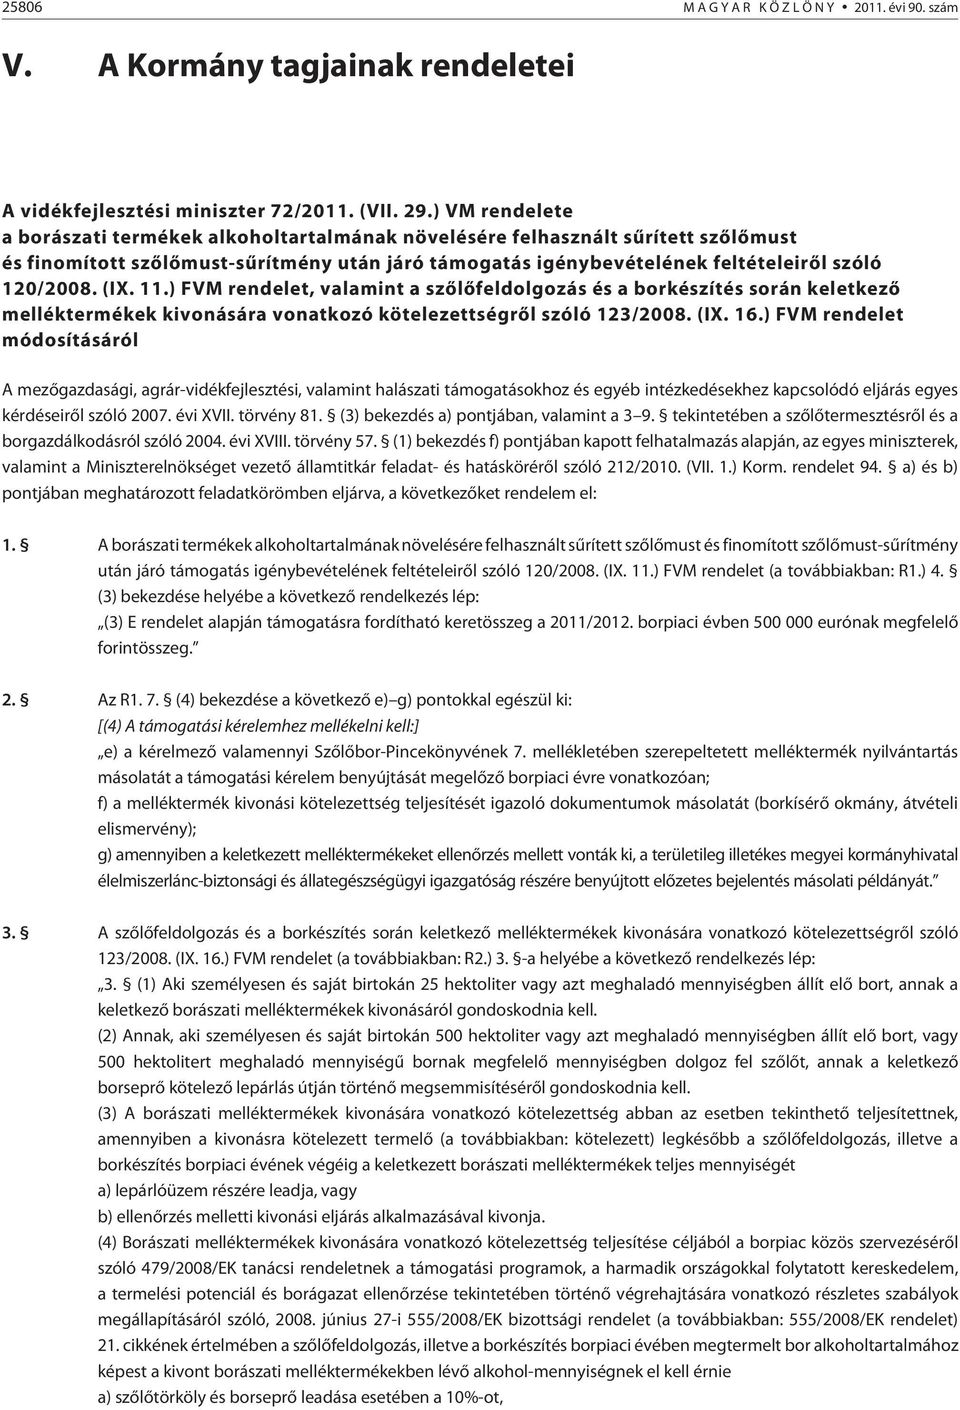 (IX. 11.) FVM rendelet, valamint a szõlõfeldolgozás és a borkészítés során keletkezõ melléktermékek kivonására vonatkozó kötelezettségrõl szóló 123/2008. (IX. 16.